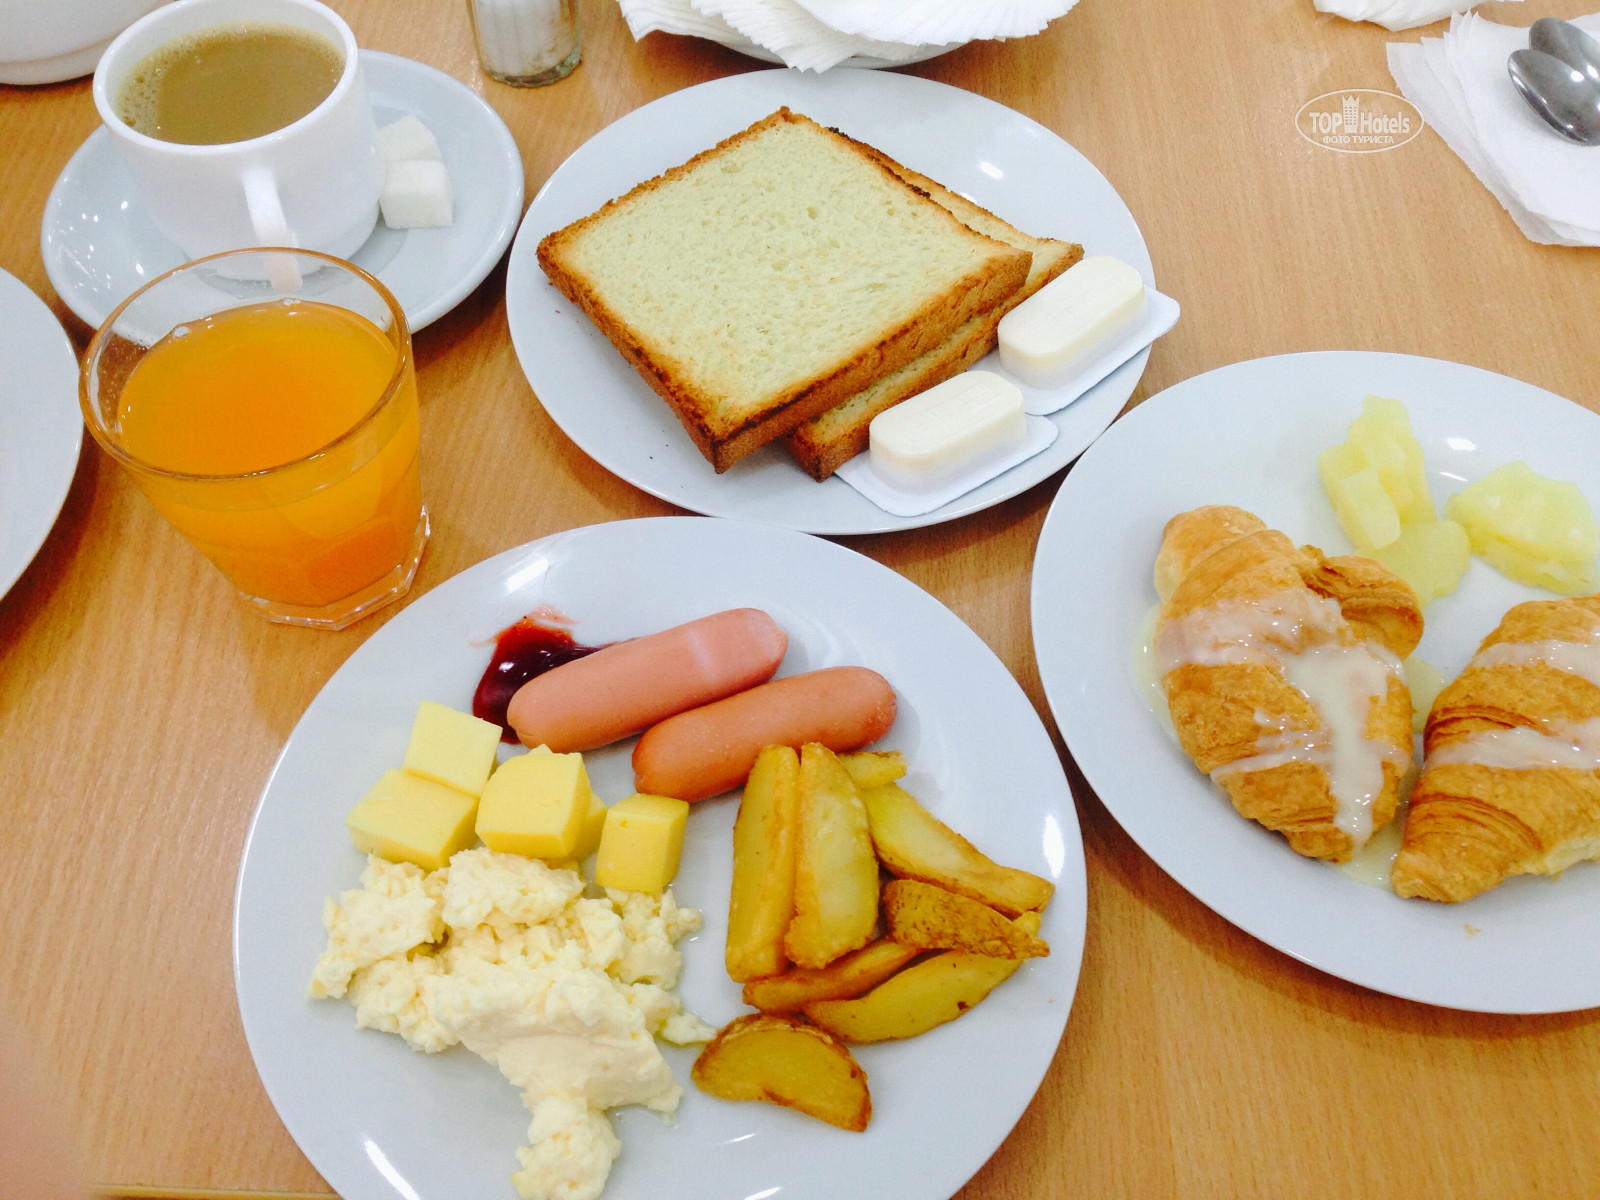 Сочи парк отель завтраки. Завтрак в столовой. Завтрак в гостинице. Порционные Завтраки в отелях.